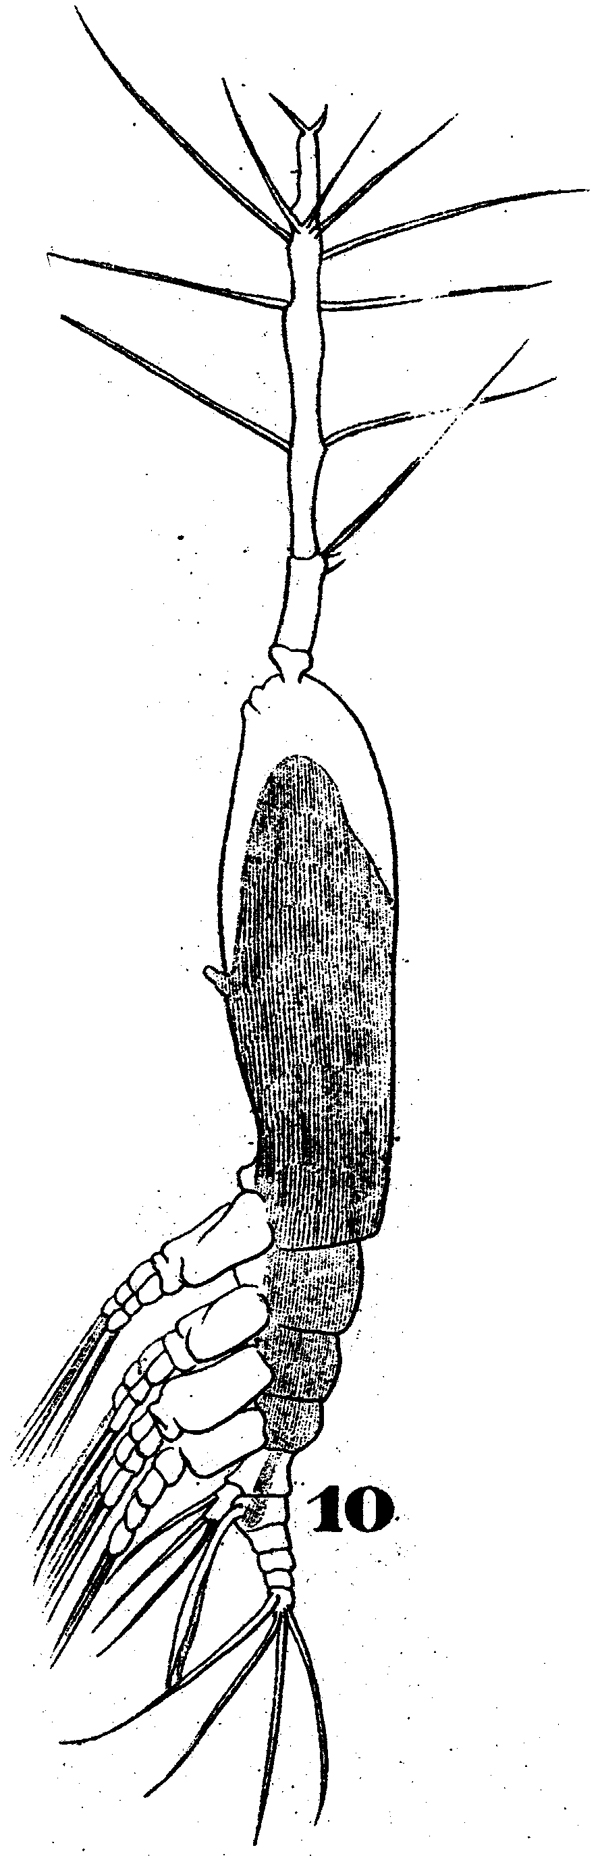 Espce Monstrilla longiremis - Planche 3 de figures morphologiques